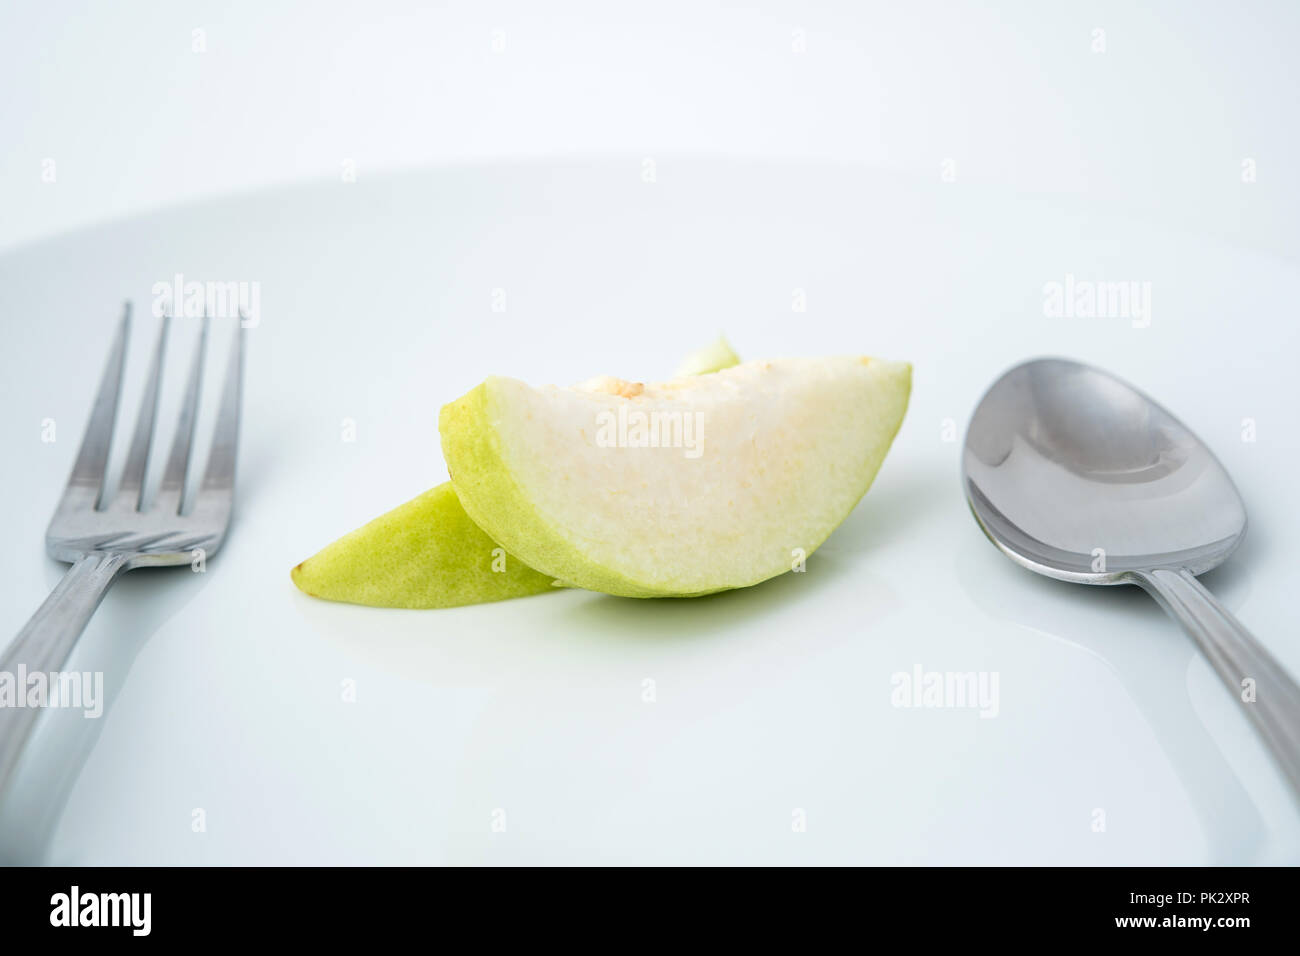 La salute di mangiare del frutto guava sulla piastra bianca con cucchiaio e forchetta Foto Stock